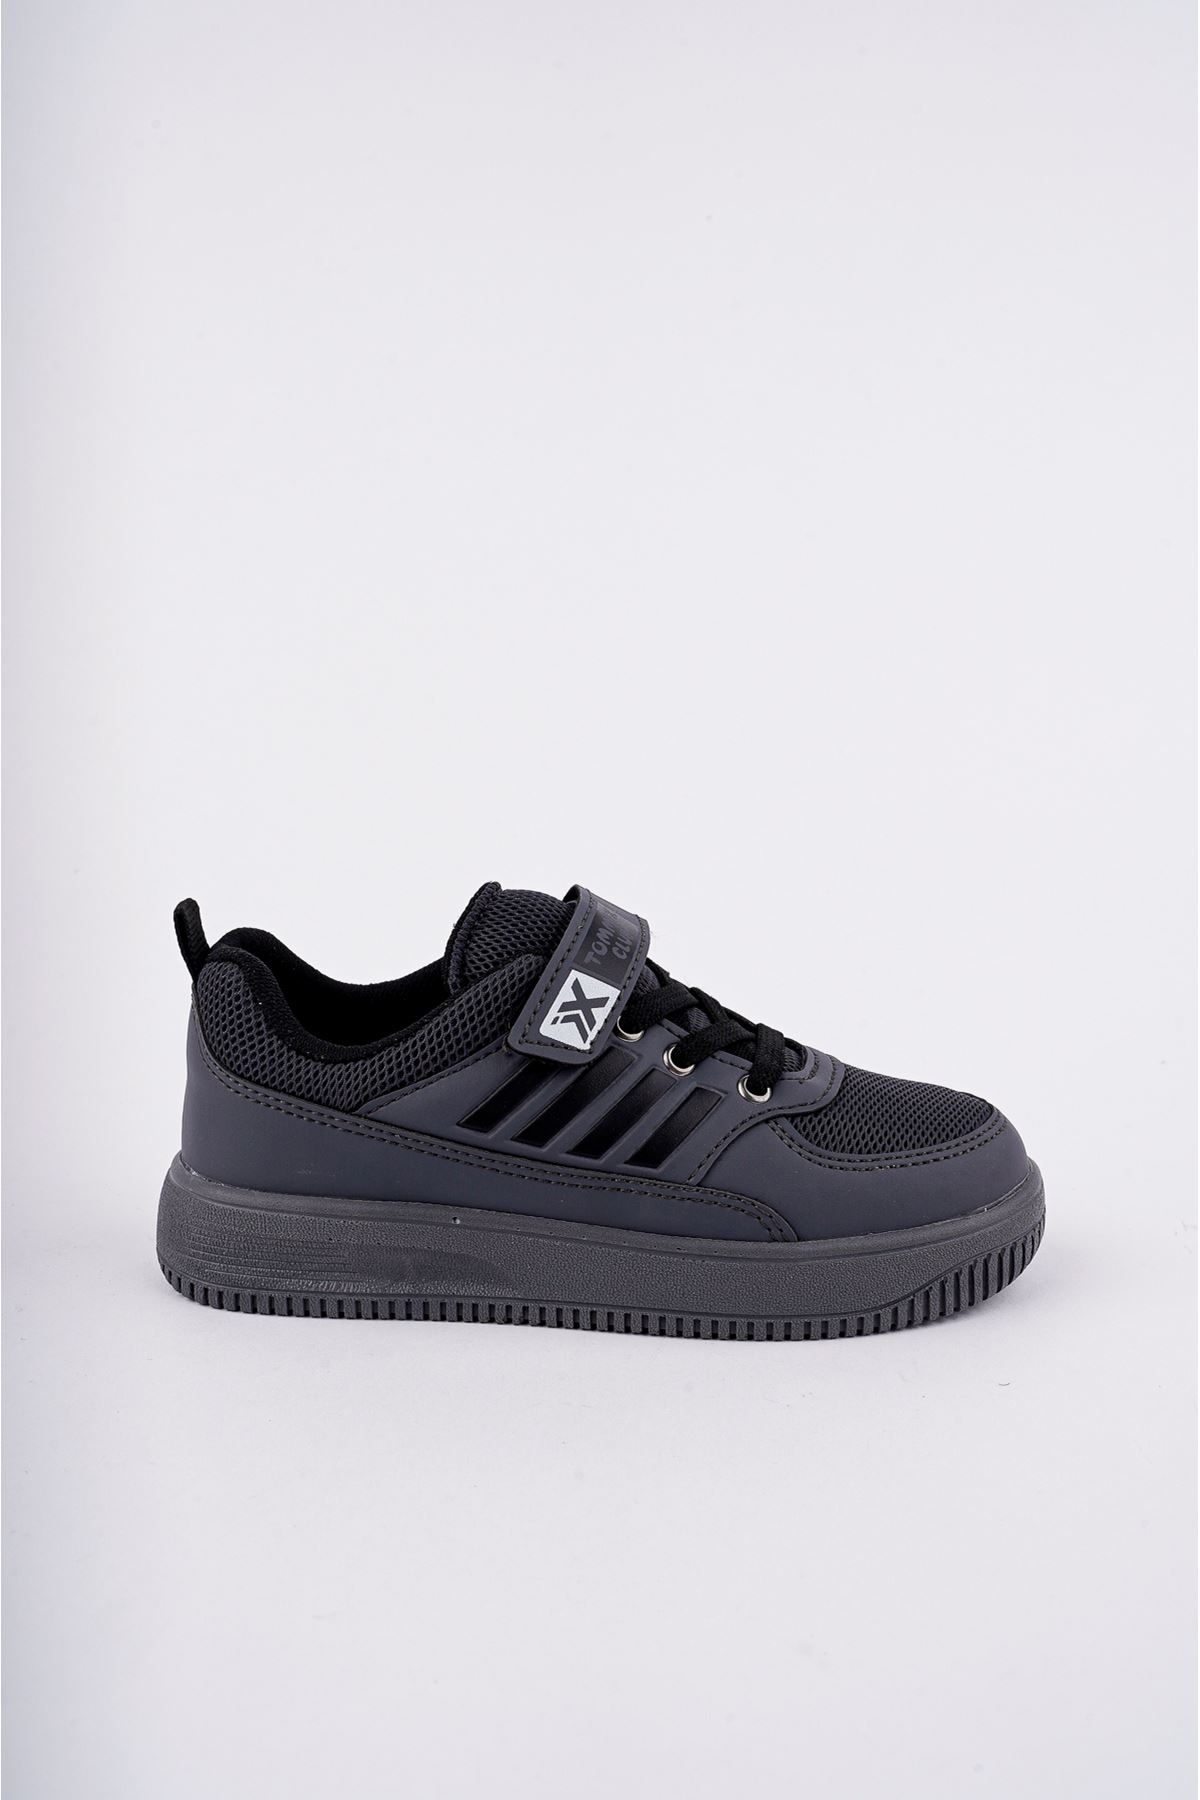 Velcro Black to Black Stripe Kids Sneakers